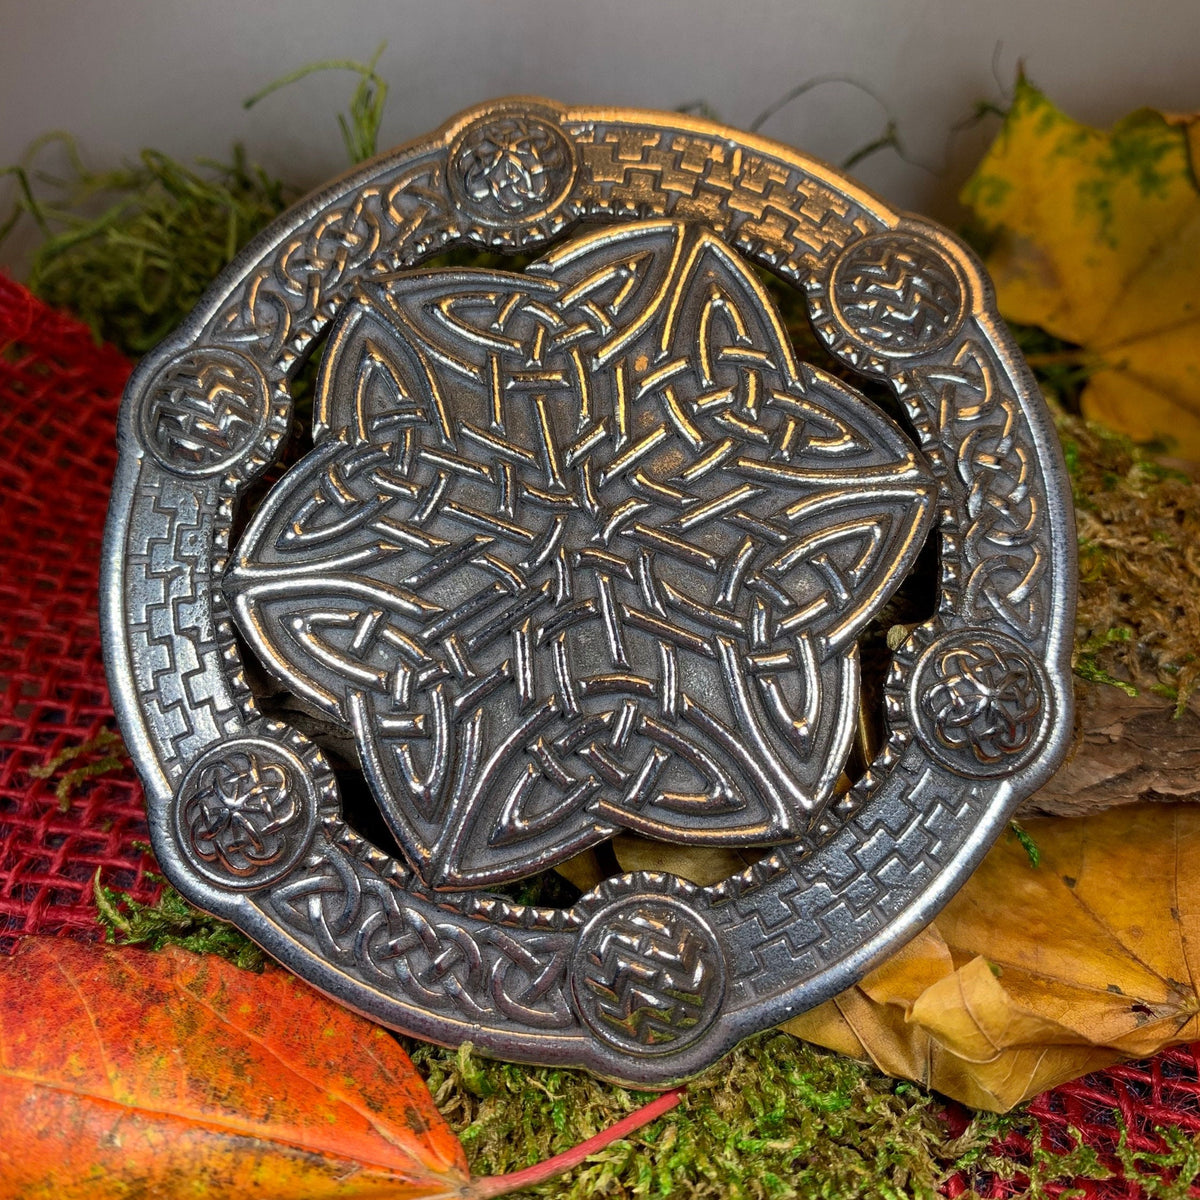 Buy Mens Gift Boxed Letter Opener - Medieval Celtic Plaid Etched Knot  design Online at desertcartSeychelles